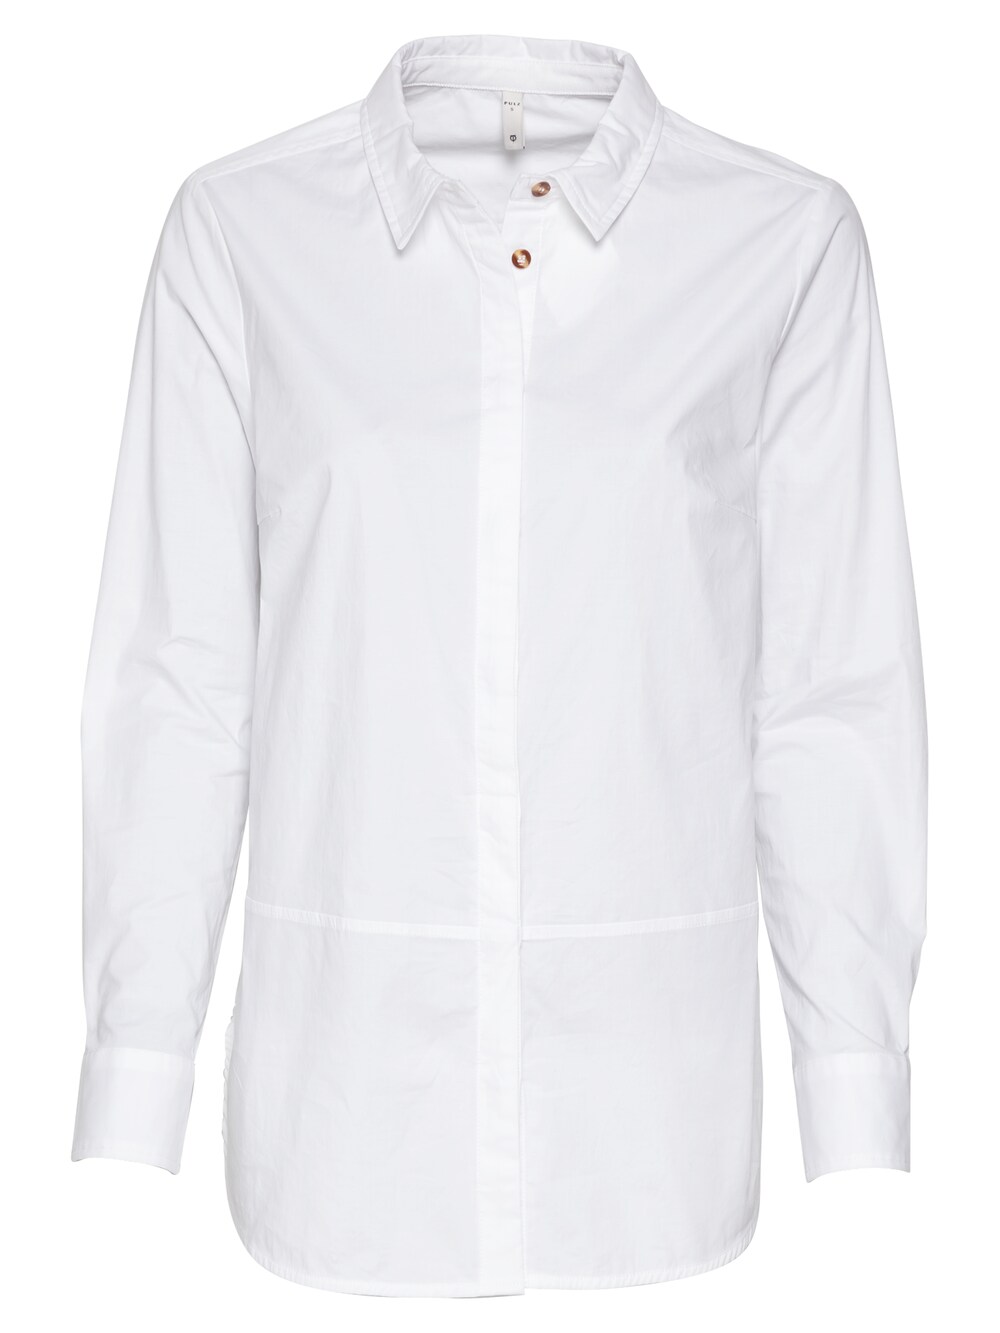 Блузка Pulz Jeans Elna, белый распошивальная машина elna 444